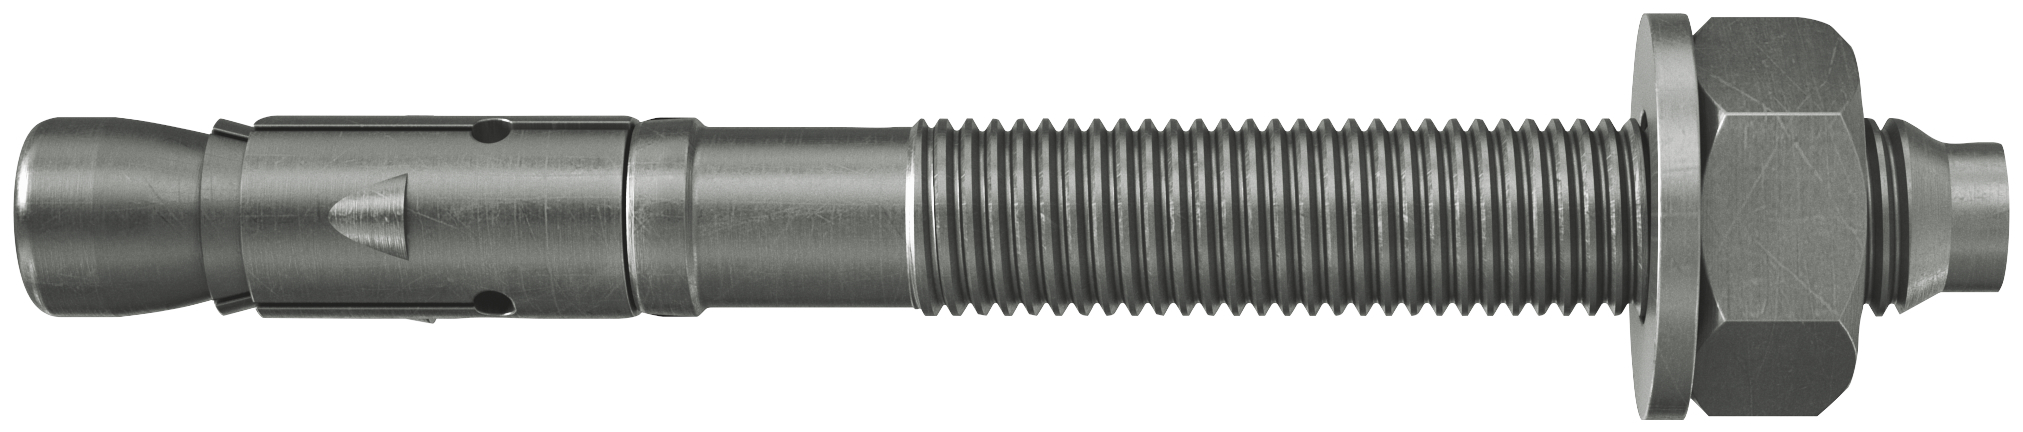 fischer Tassello acciaio FAZ II 10/30 A4 (50 Pz.) L'ancorante ad espansione ad alte prestazioni per carichi statici su calcestruzzo fessurato e per applicazioni sismiche. Versione in acciaio inossidabile con classe di resistenza alla corrosione CRC III..